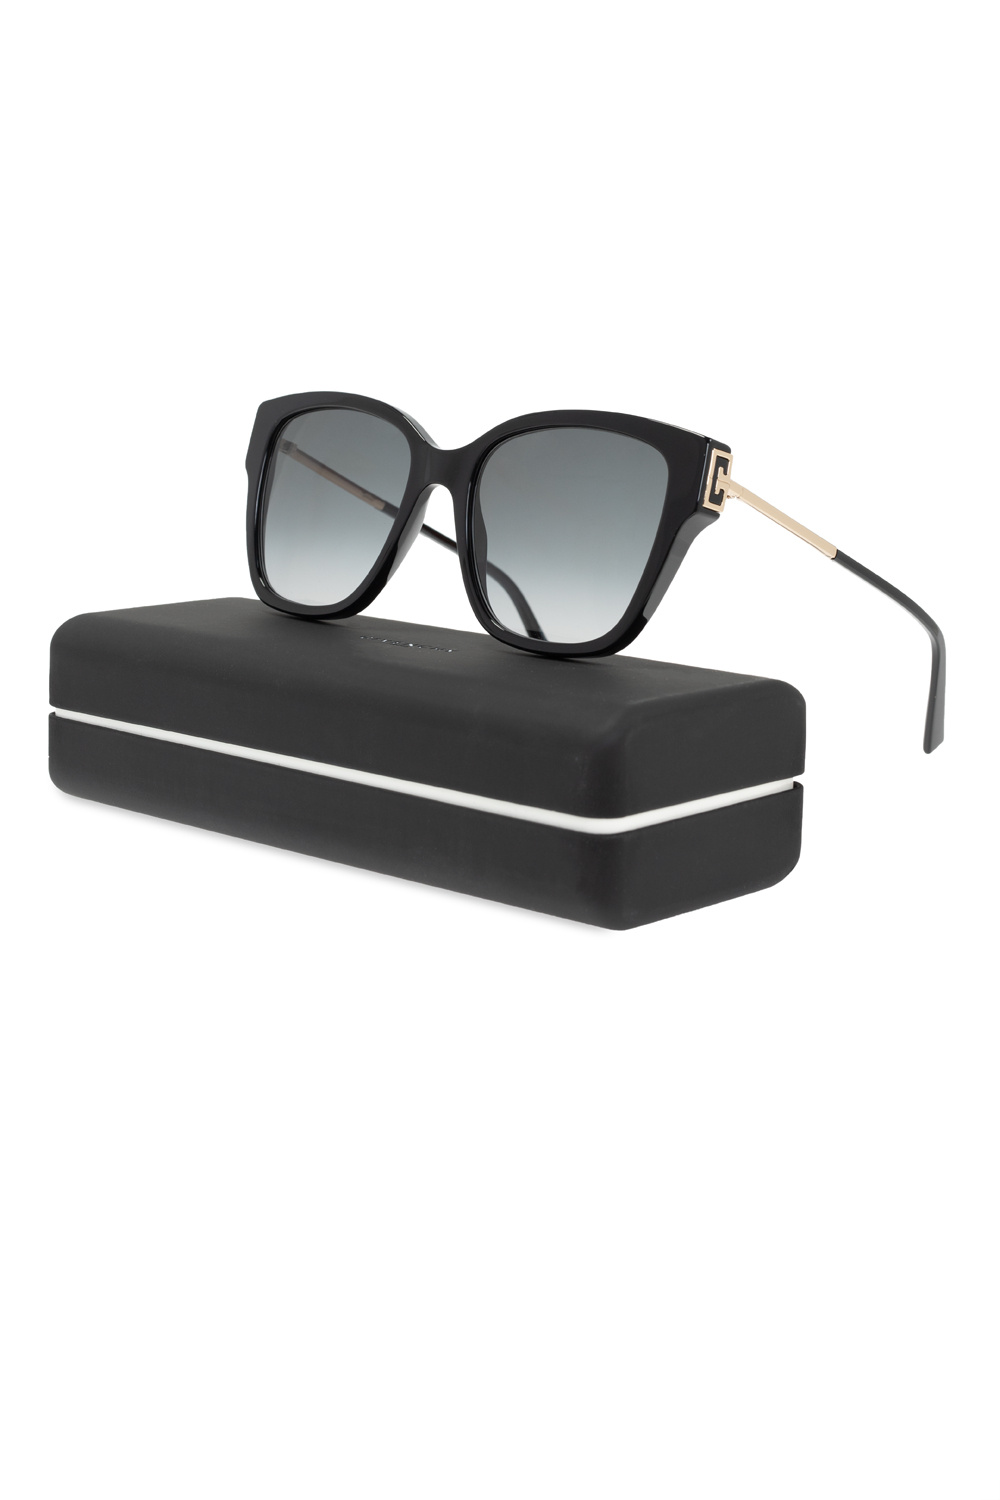 Givenchy x Maison Margiela pantos-frame sunglasses